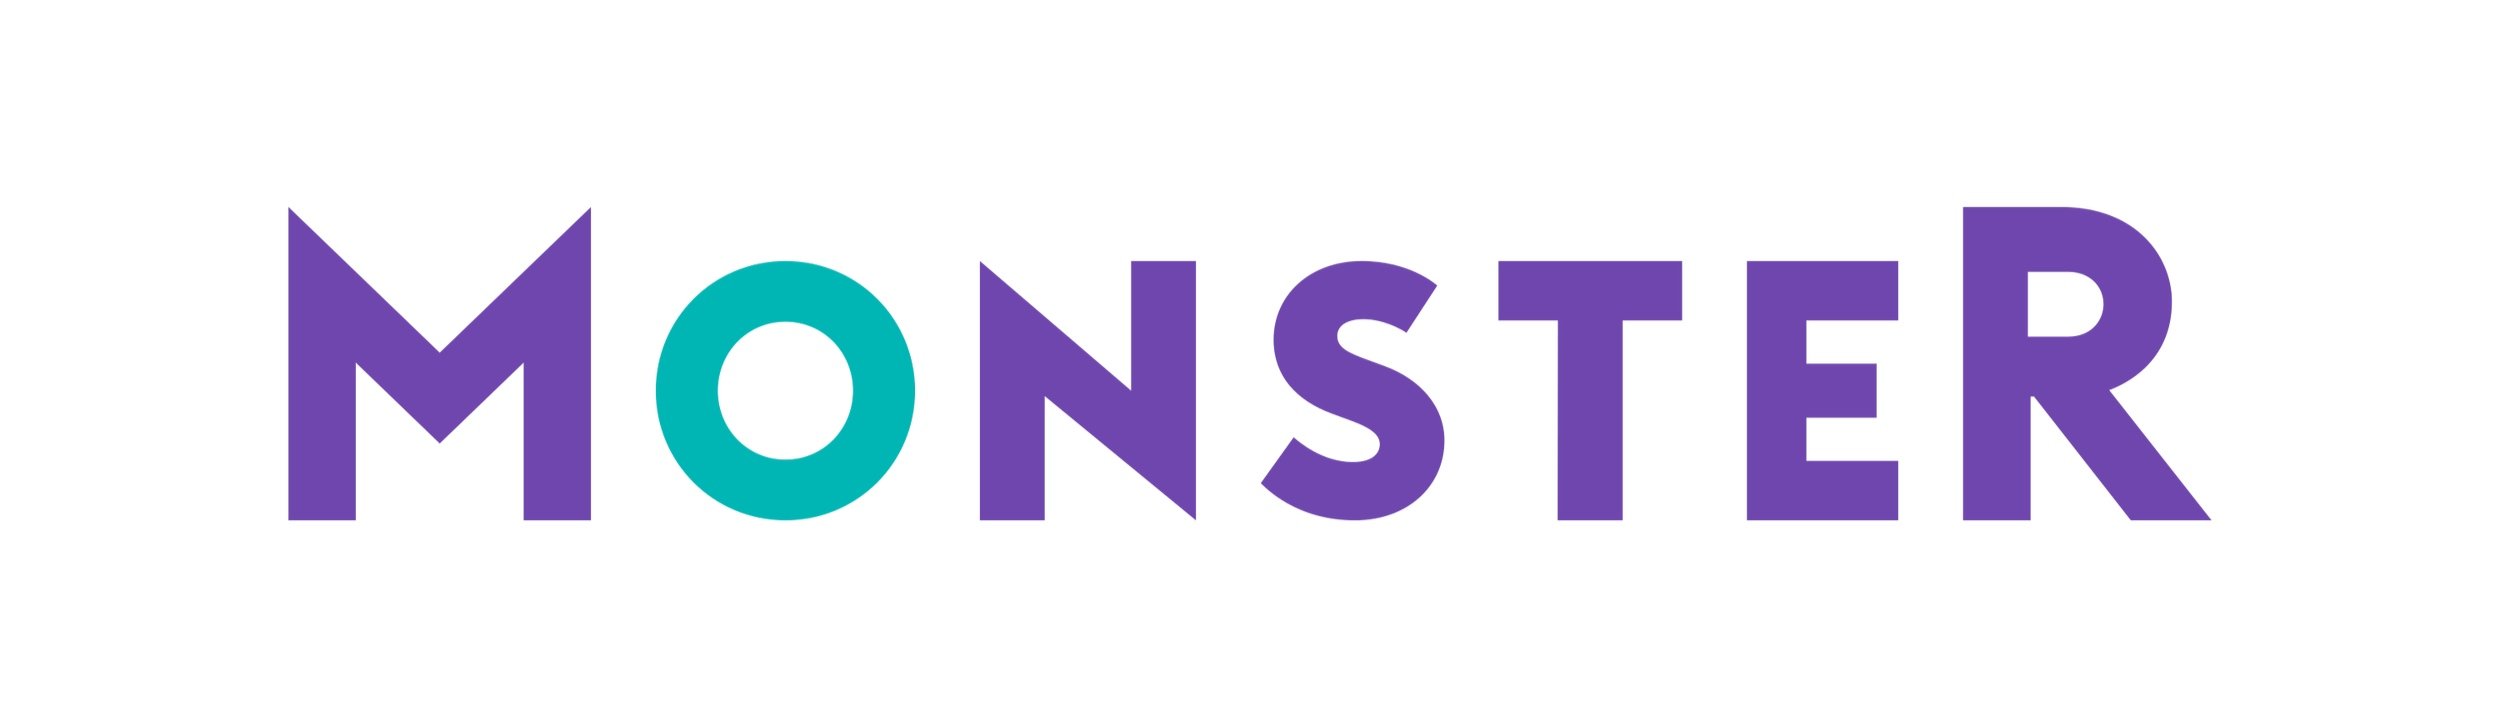 Monster.com-Logo.wine.jpg